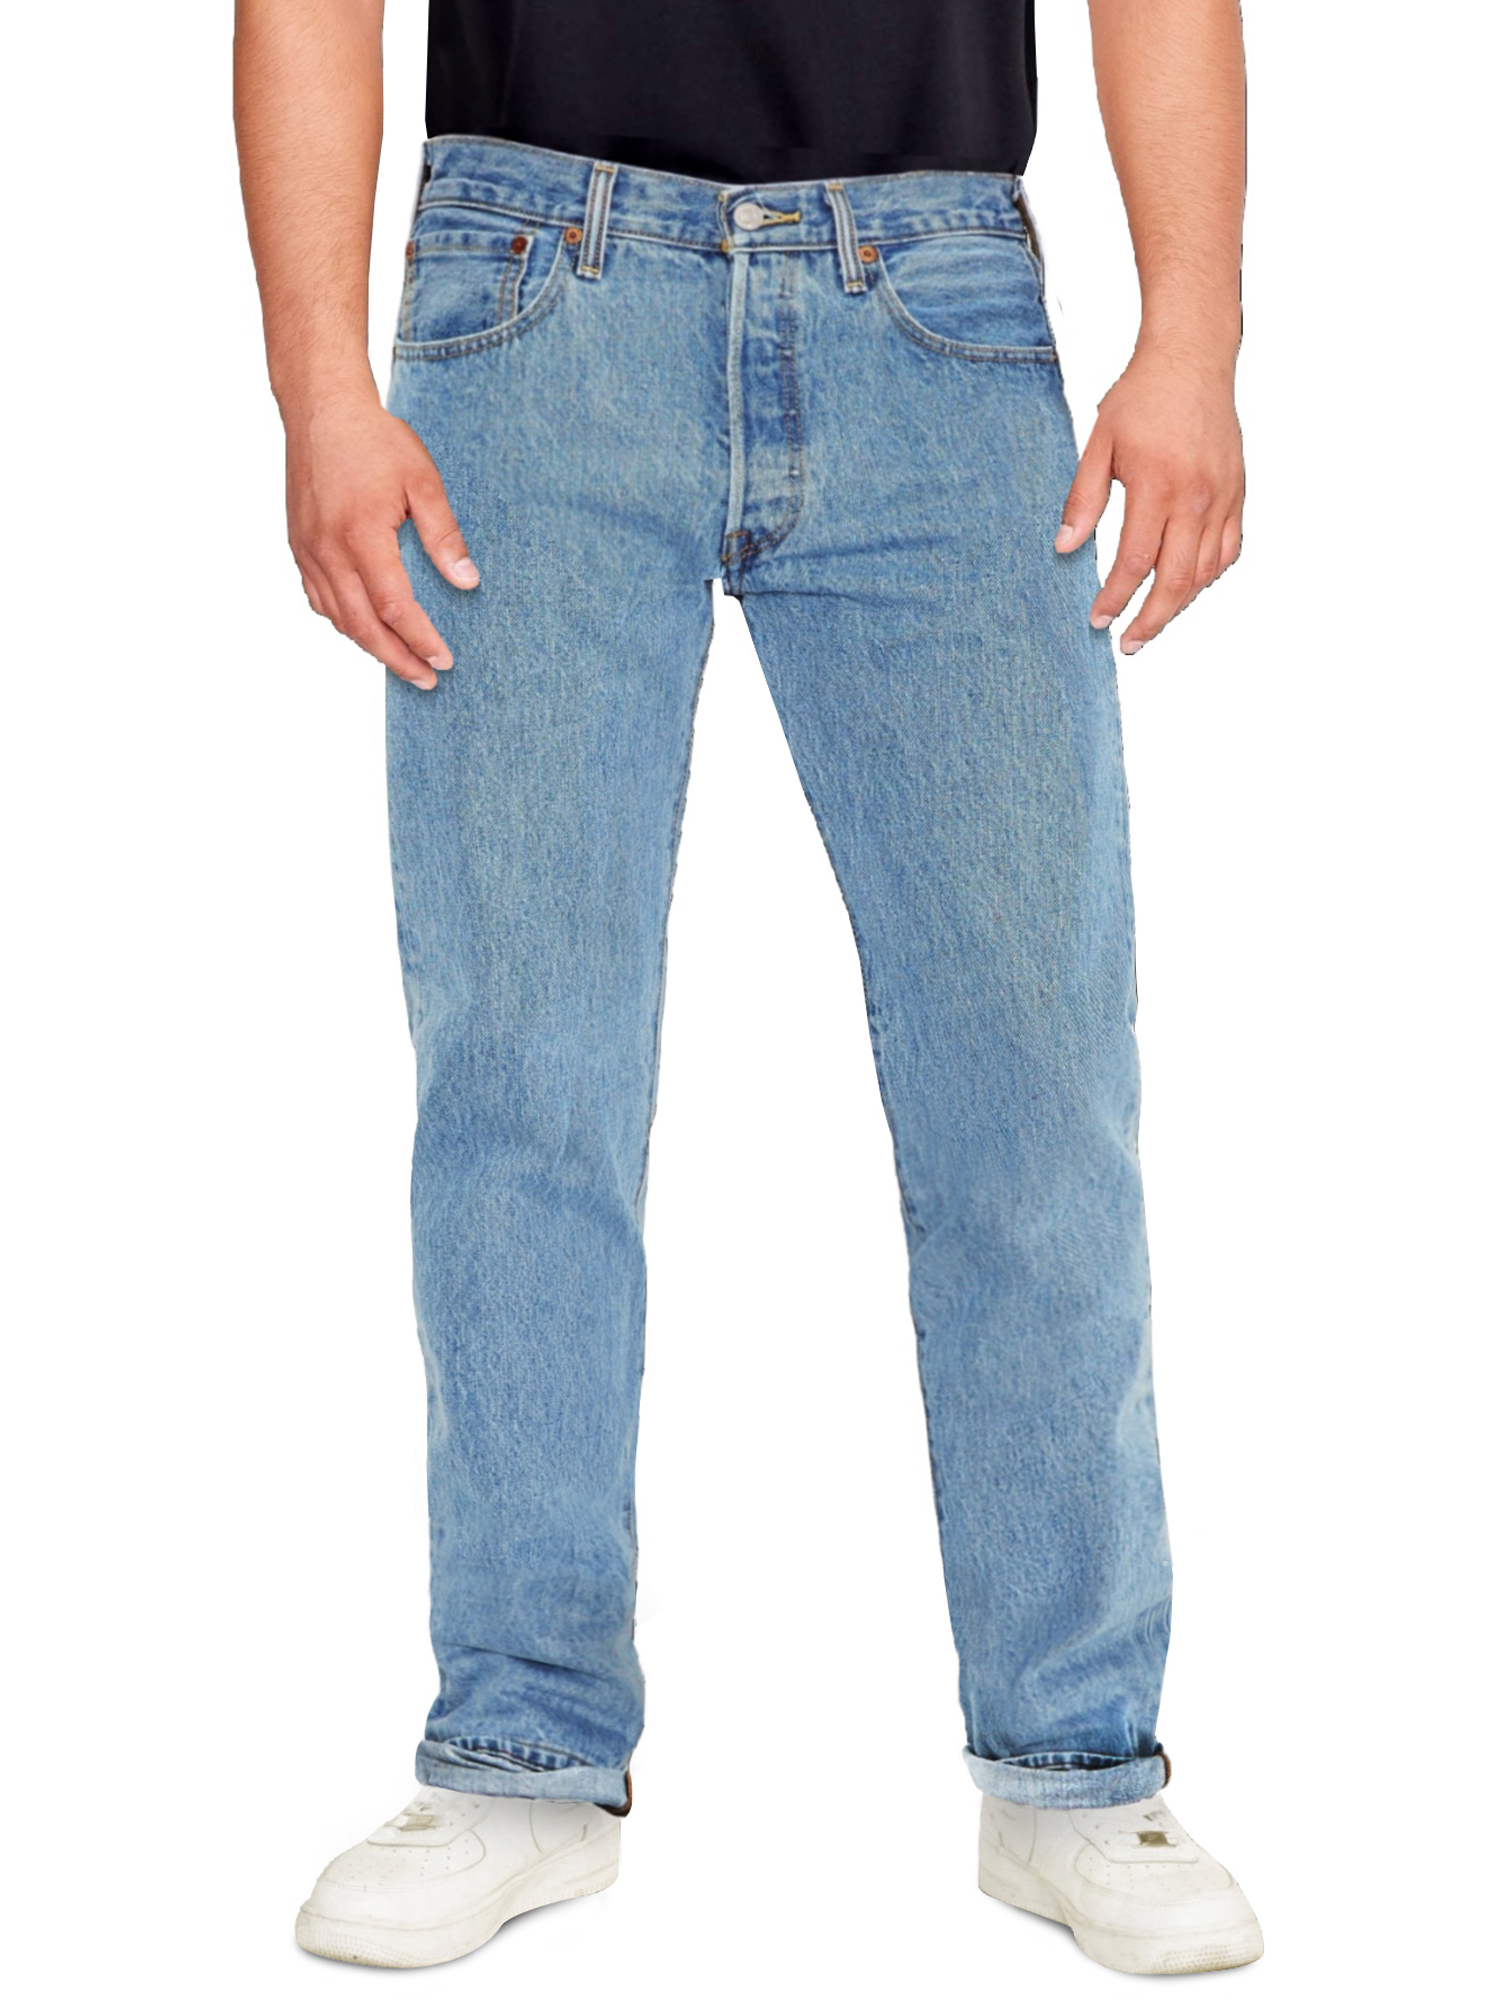 Levi's Men's 501 Original Fit Jeans - image 3 of 10